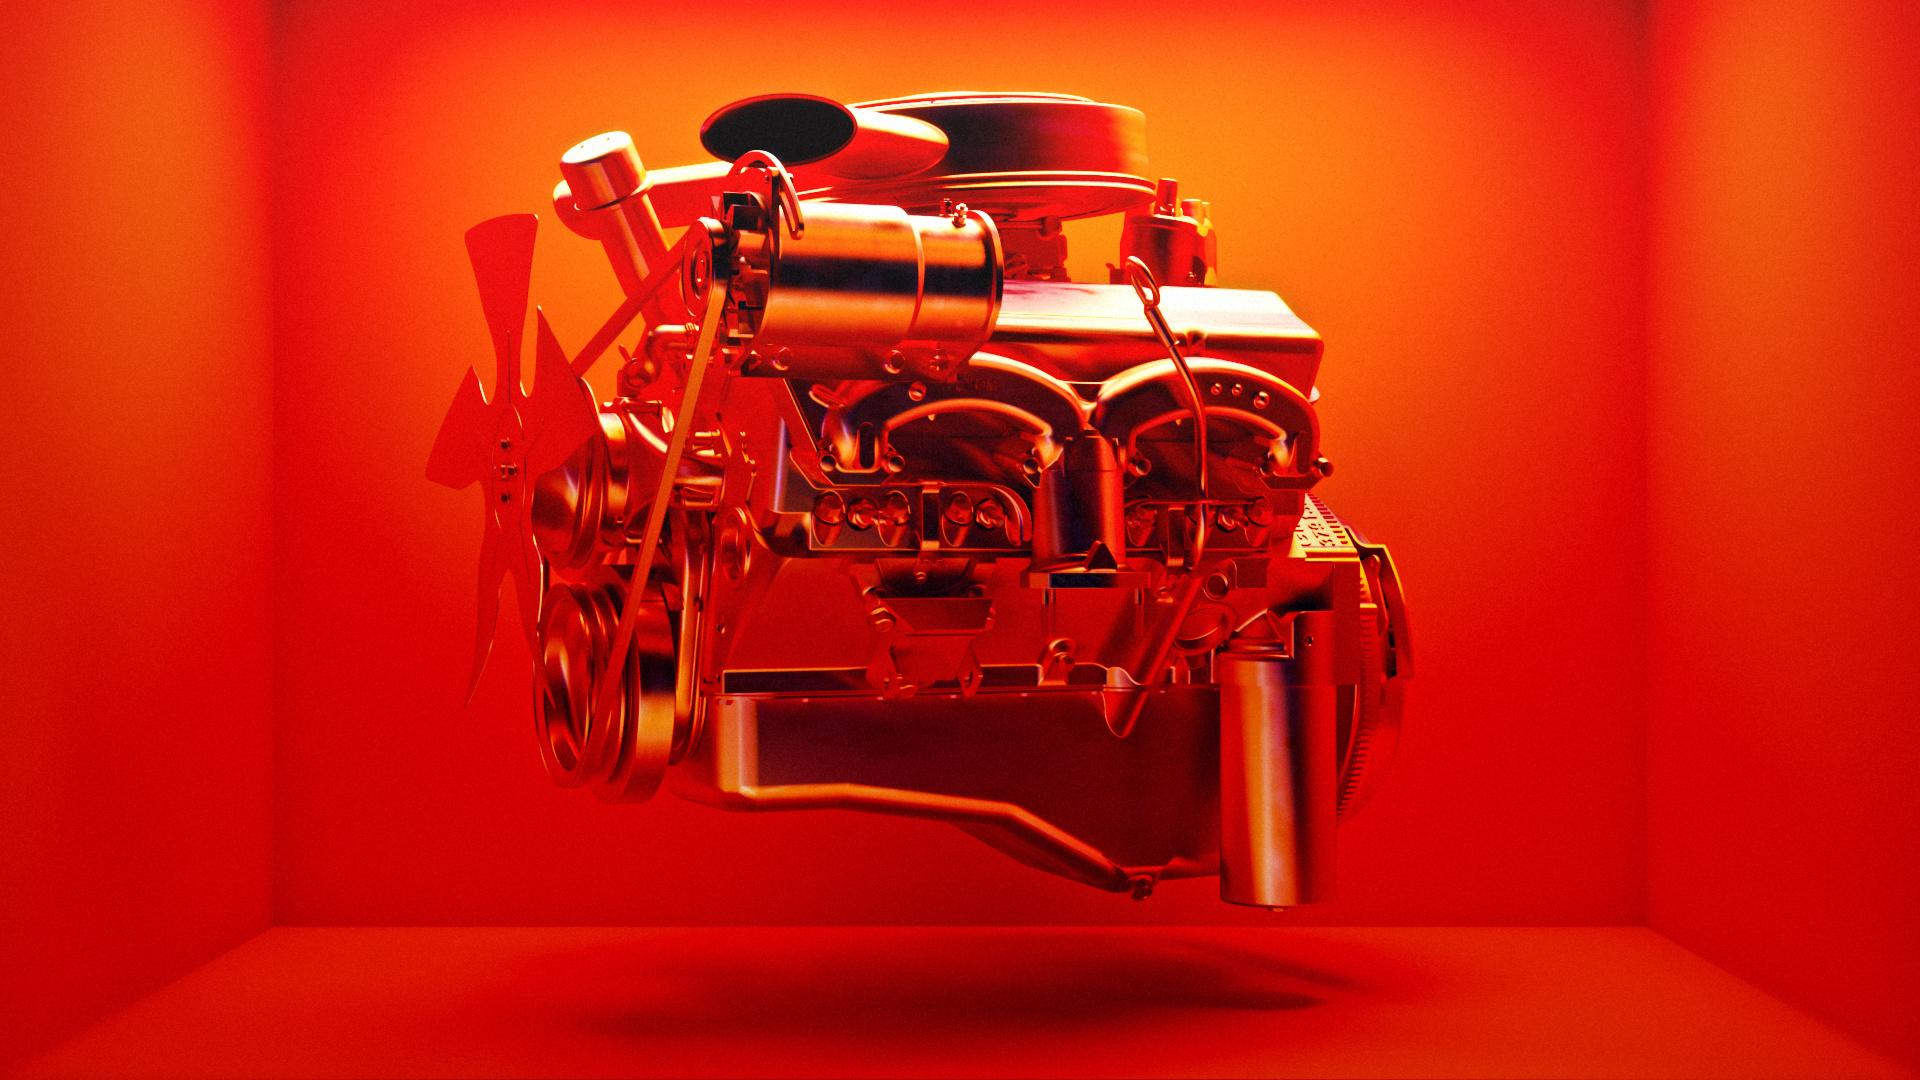 3D Rendering von einem Motor in einem orangenem Farbraum